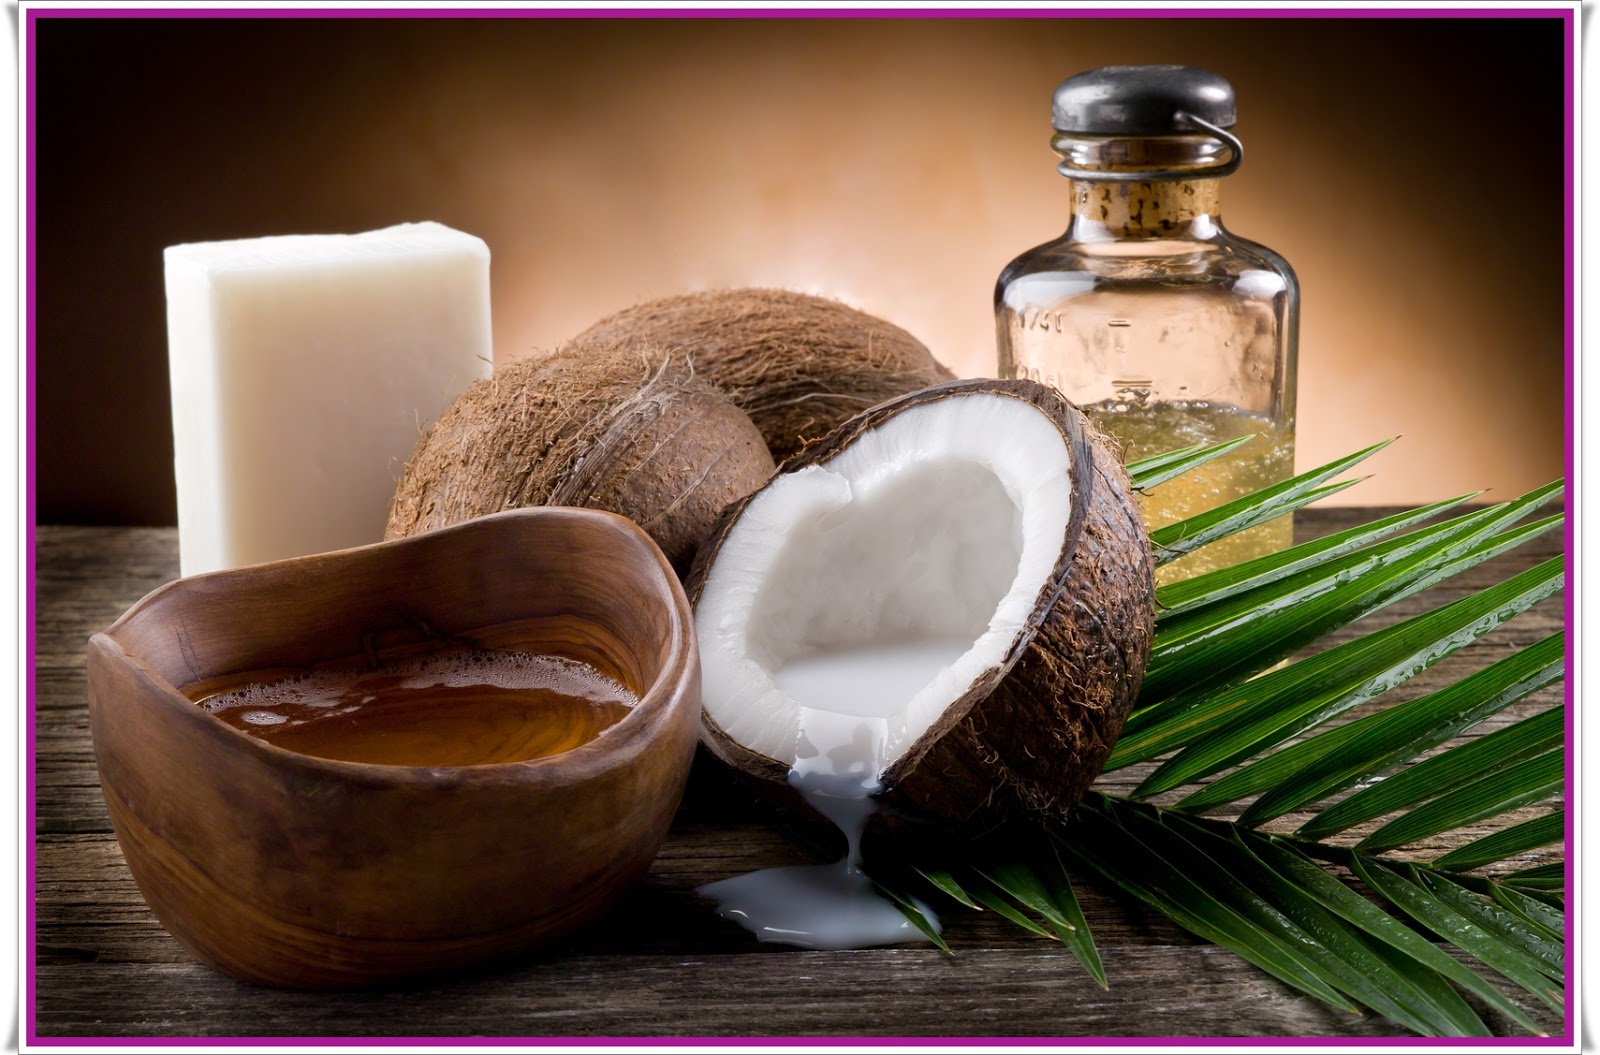 benefícios do óleo de coco